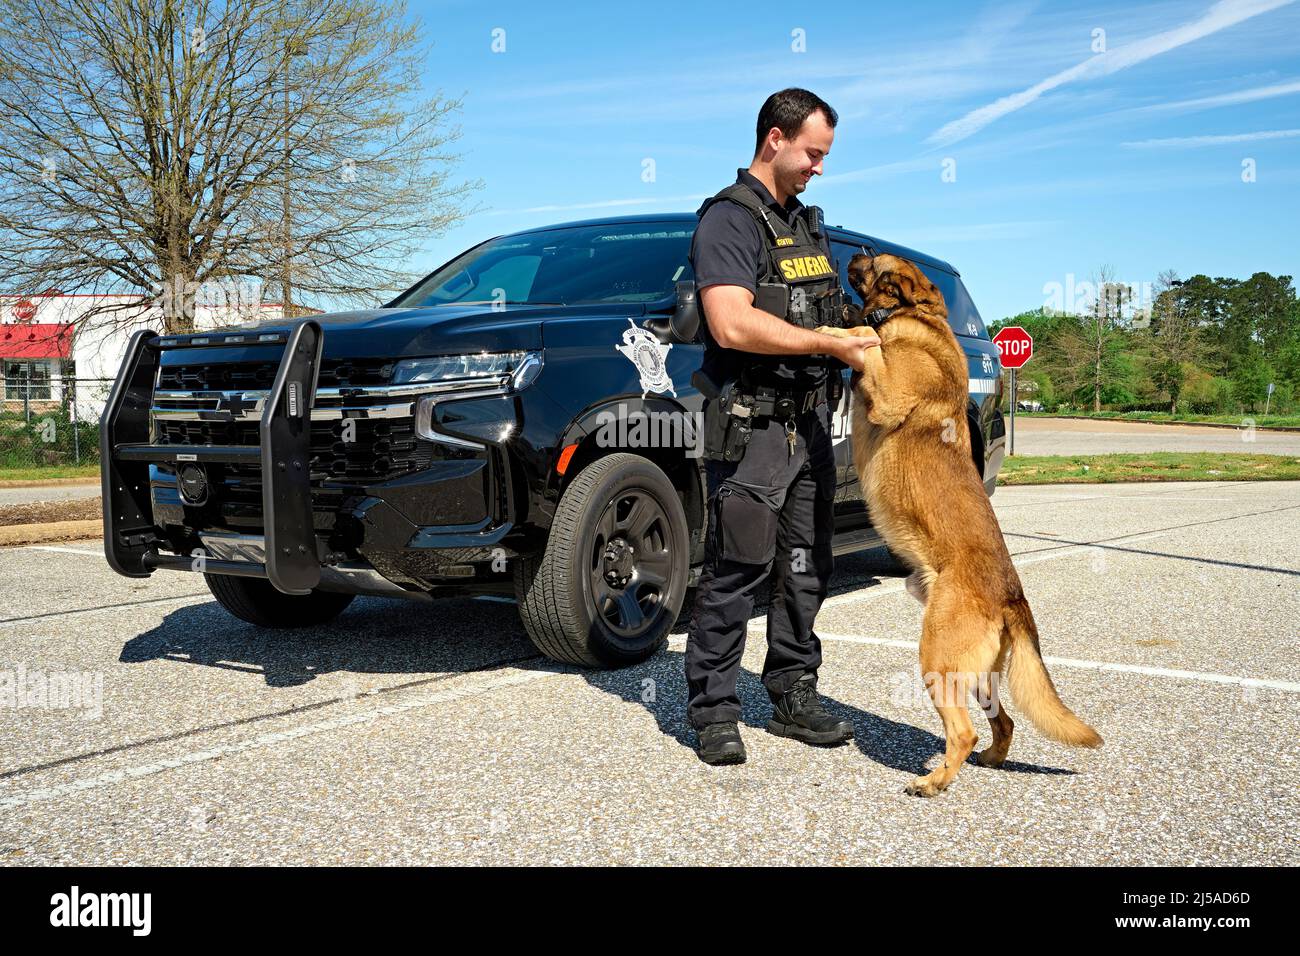 Polizeibeamter K-9 oder stellvertretender Sheriff K-9 mit seinem Polizeihund K-9 vor einem Polizei-SUV-Kreuzer in Montgomery Alabama, USA. Stockfoto